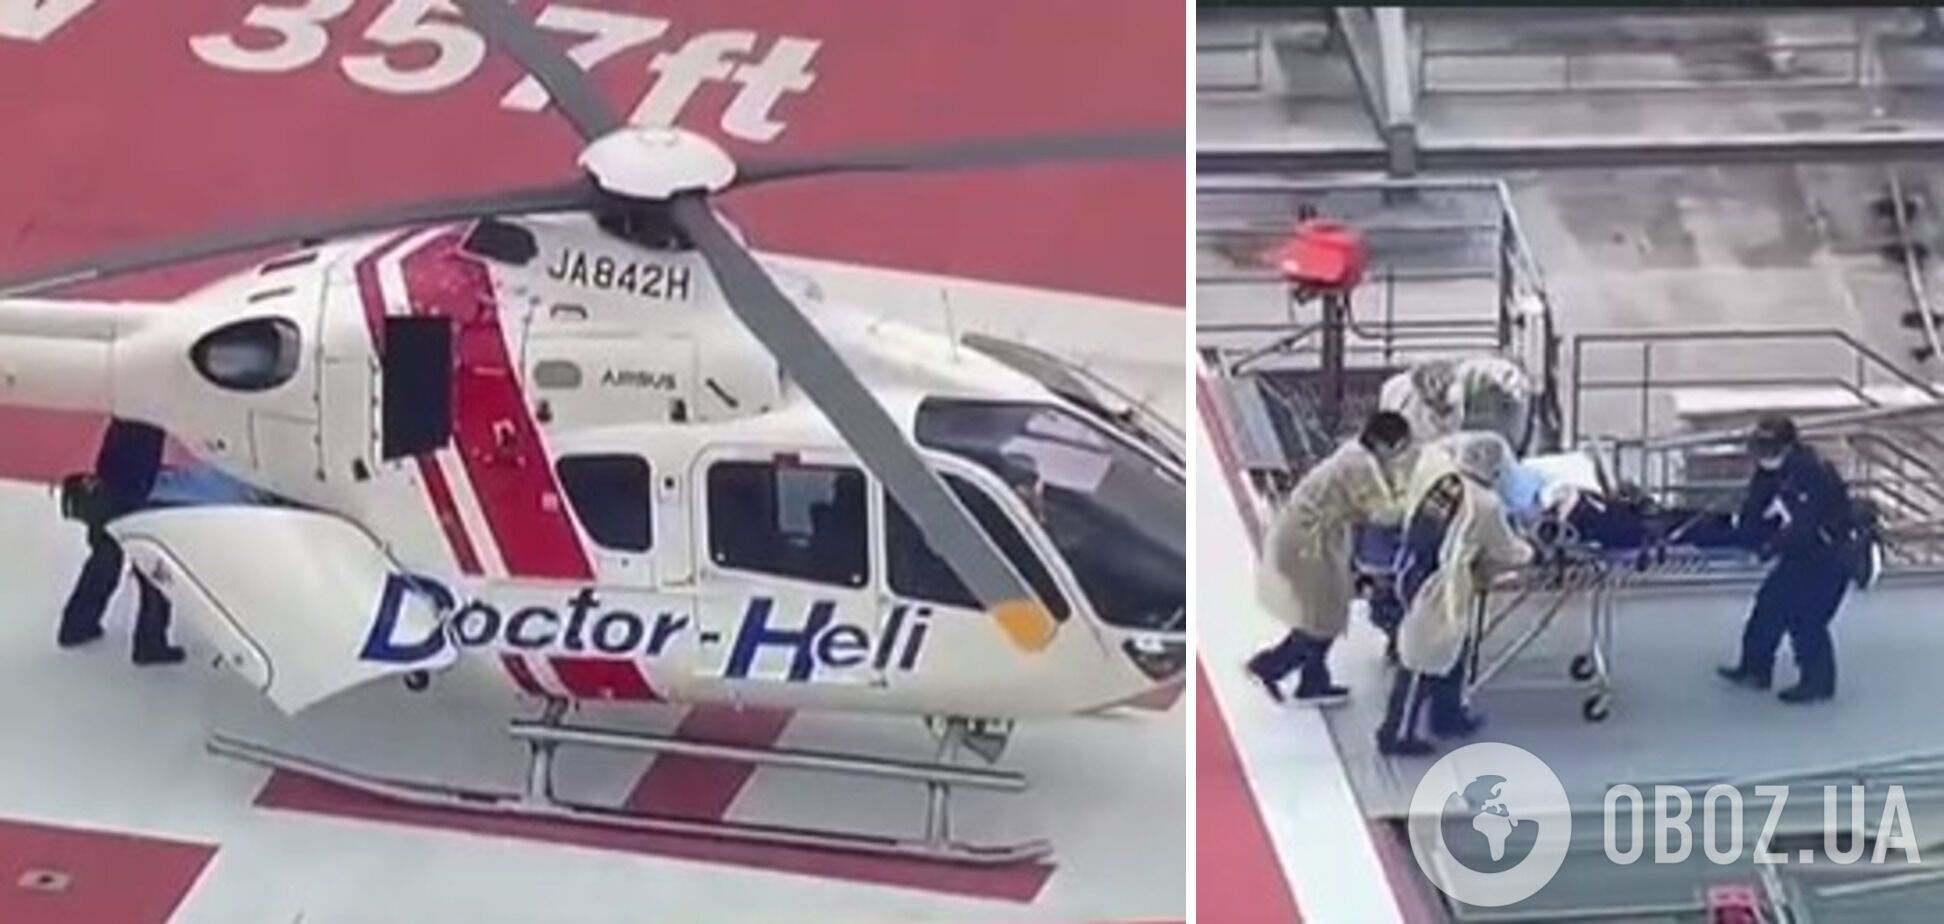 Раненого политика перевезли в другую больницу вертолетом